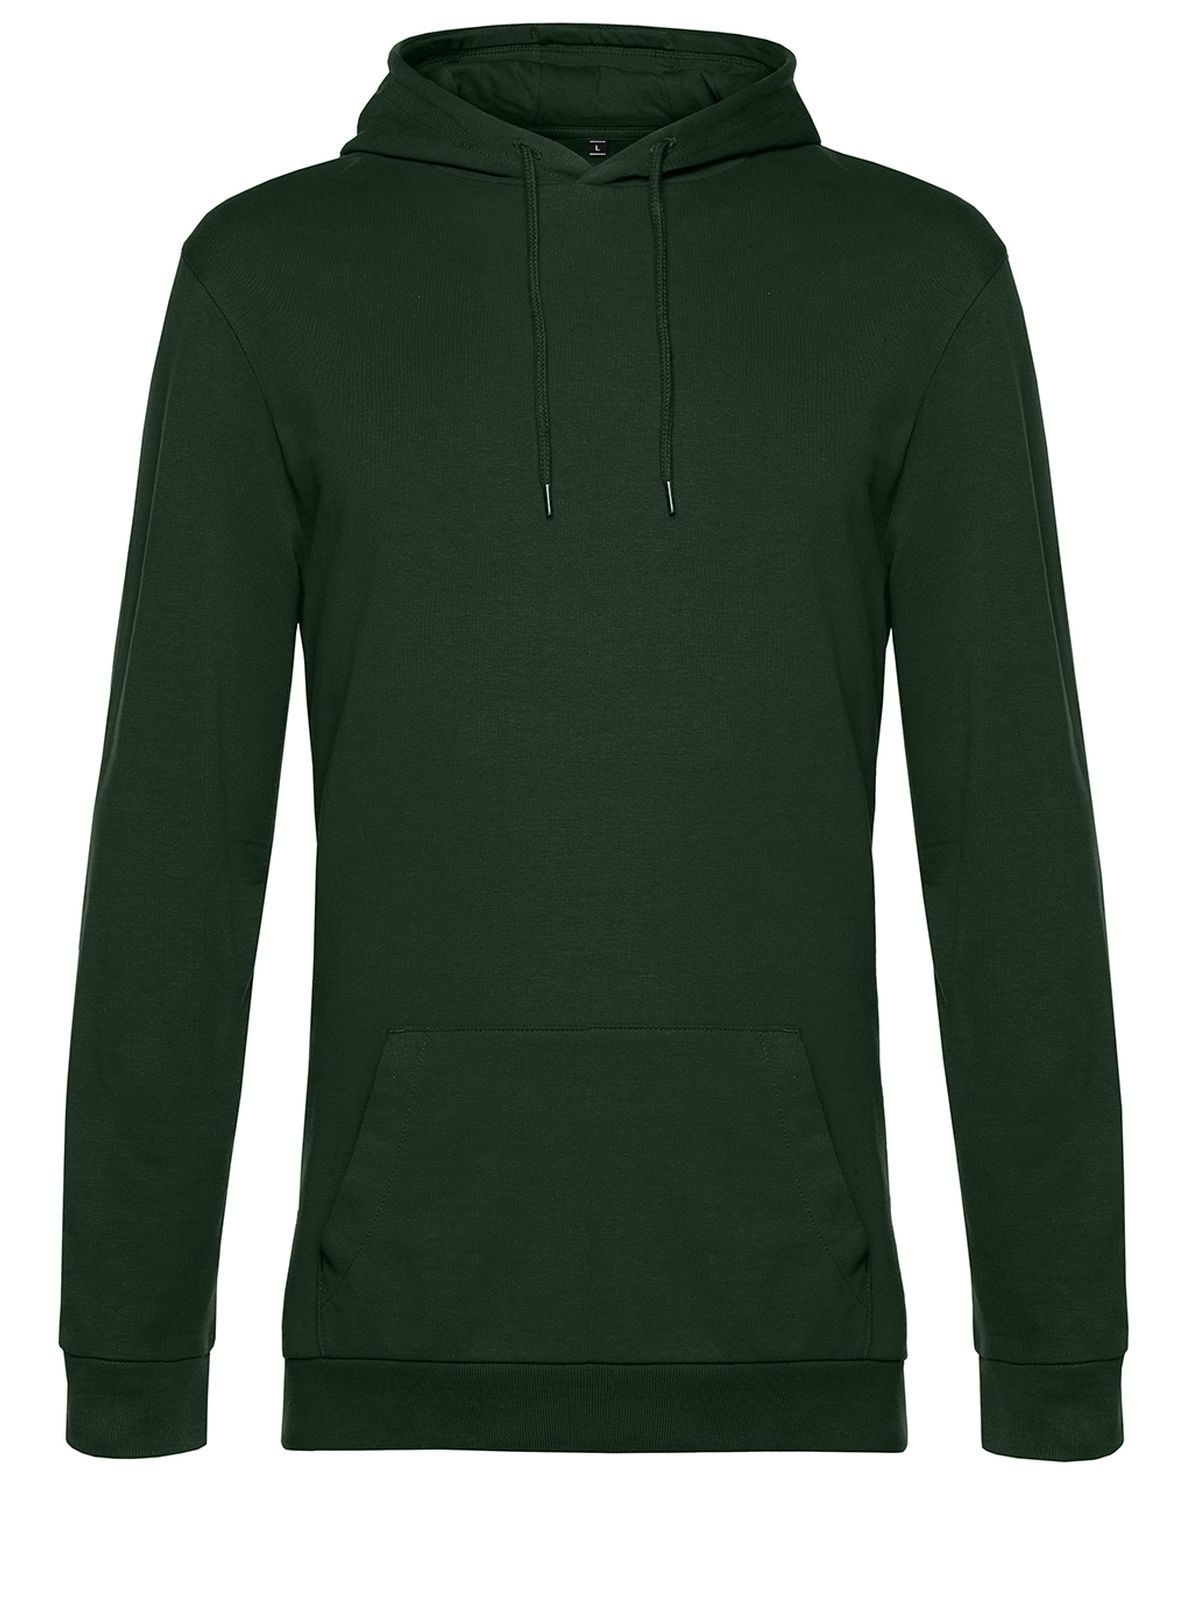 hoodie-forest-green.webp